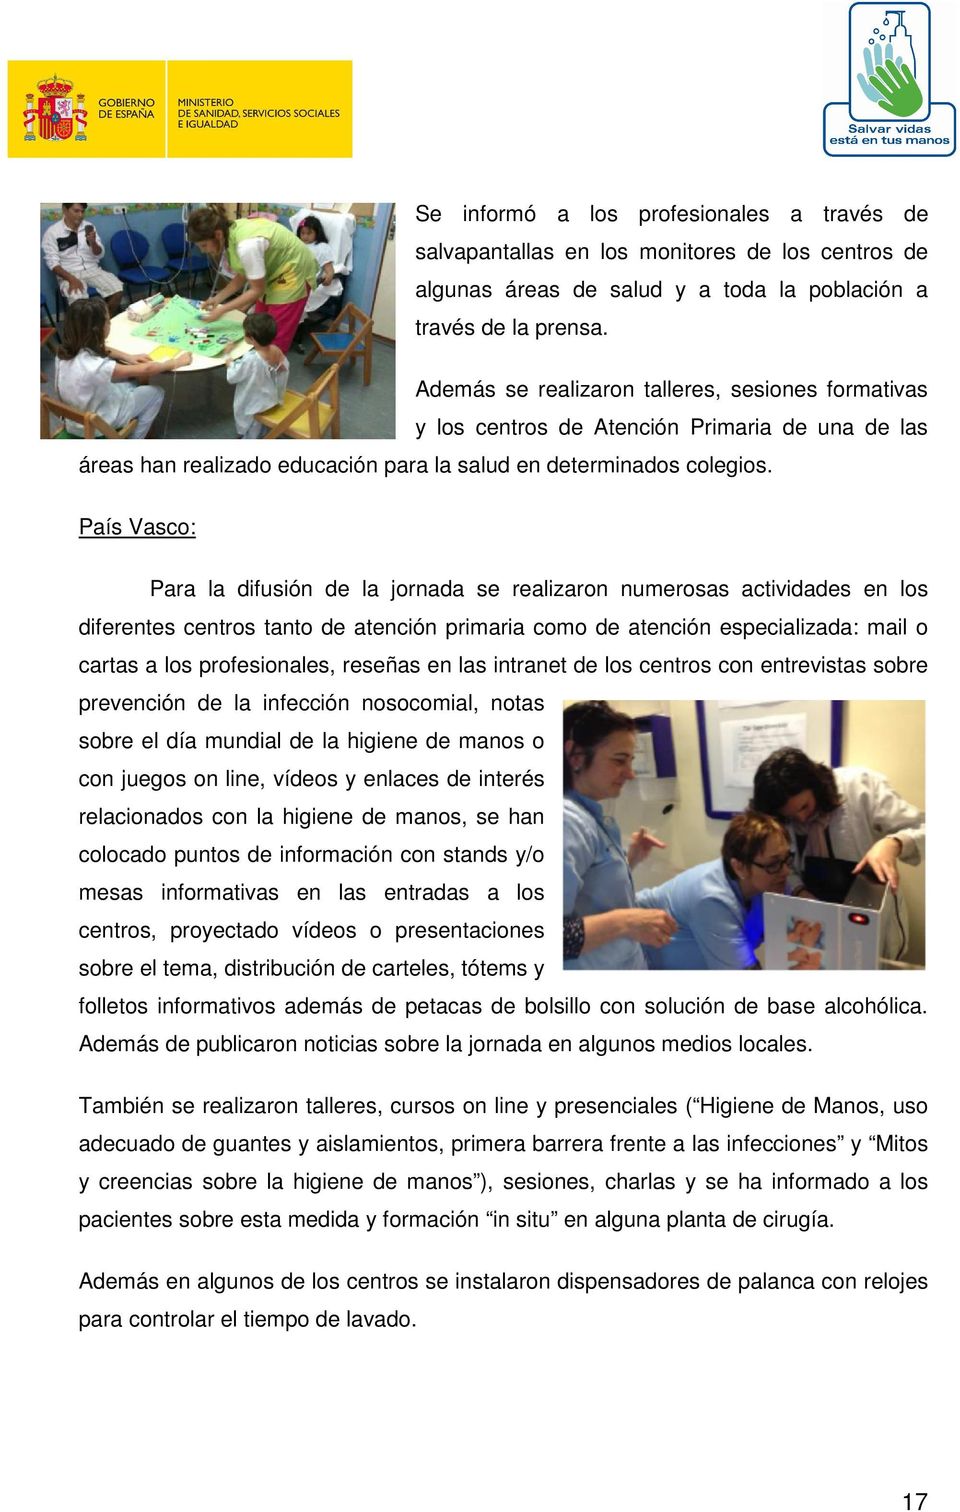 País Vasco: Para la difusión de la jornada se realizaron numerosas actividades en los diferentes centros tanto de atención primaria como de atención especializada: mail o cartas a los profesionales,